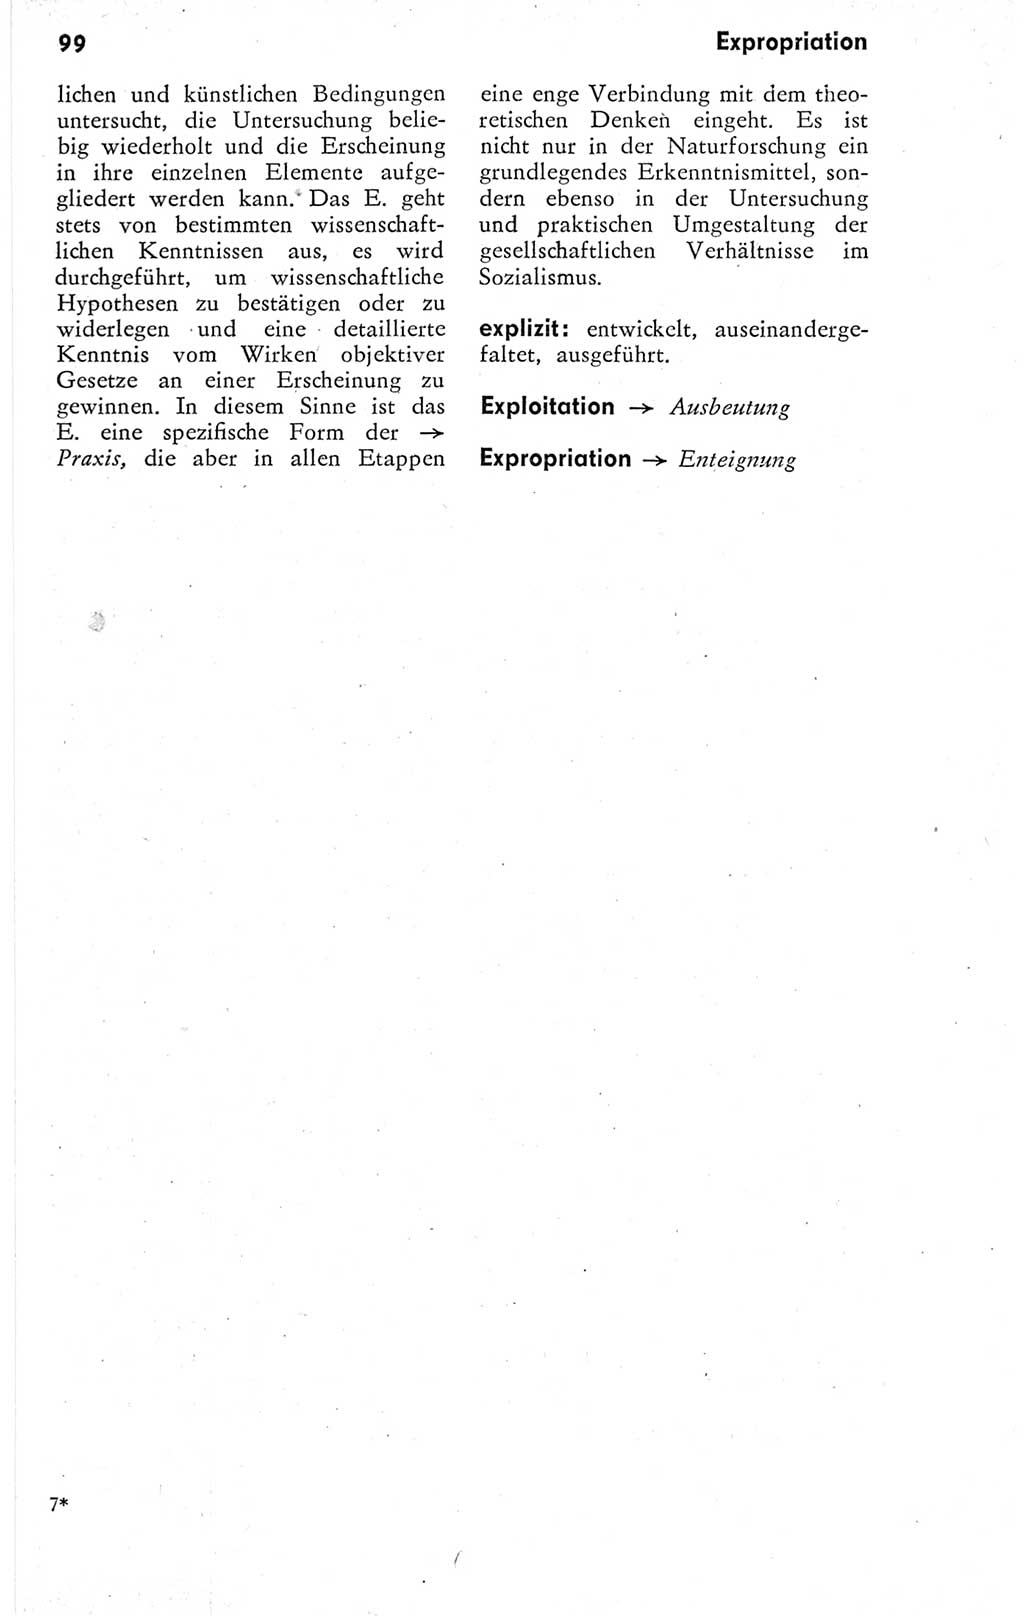 Kleines Wörterbuch der marxistisch-leninistischen Philosophie [Deutsche Demokratische Republik (DDR)] 1974, Seite 99 (Kl. Wb. ML Phil. DDR 1974, S. 99)